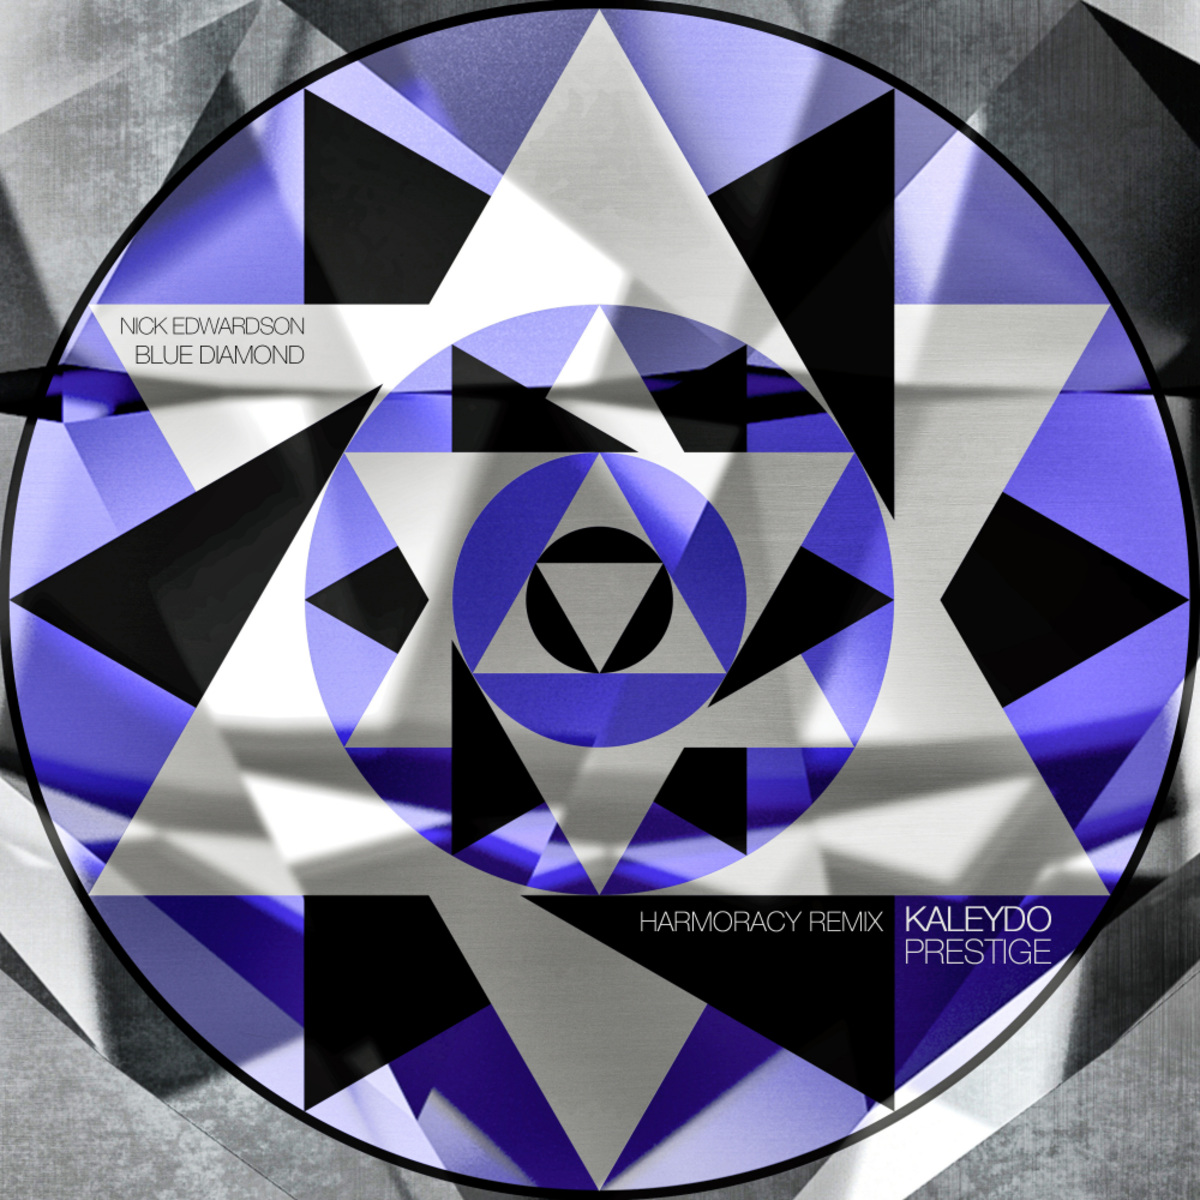 Nick Edwardson - Blue Diamond (Harmoracy Remix) / Kaleydo Prestige